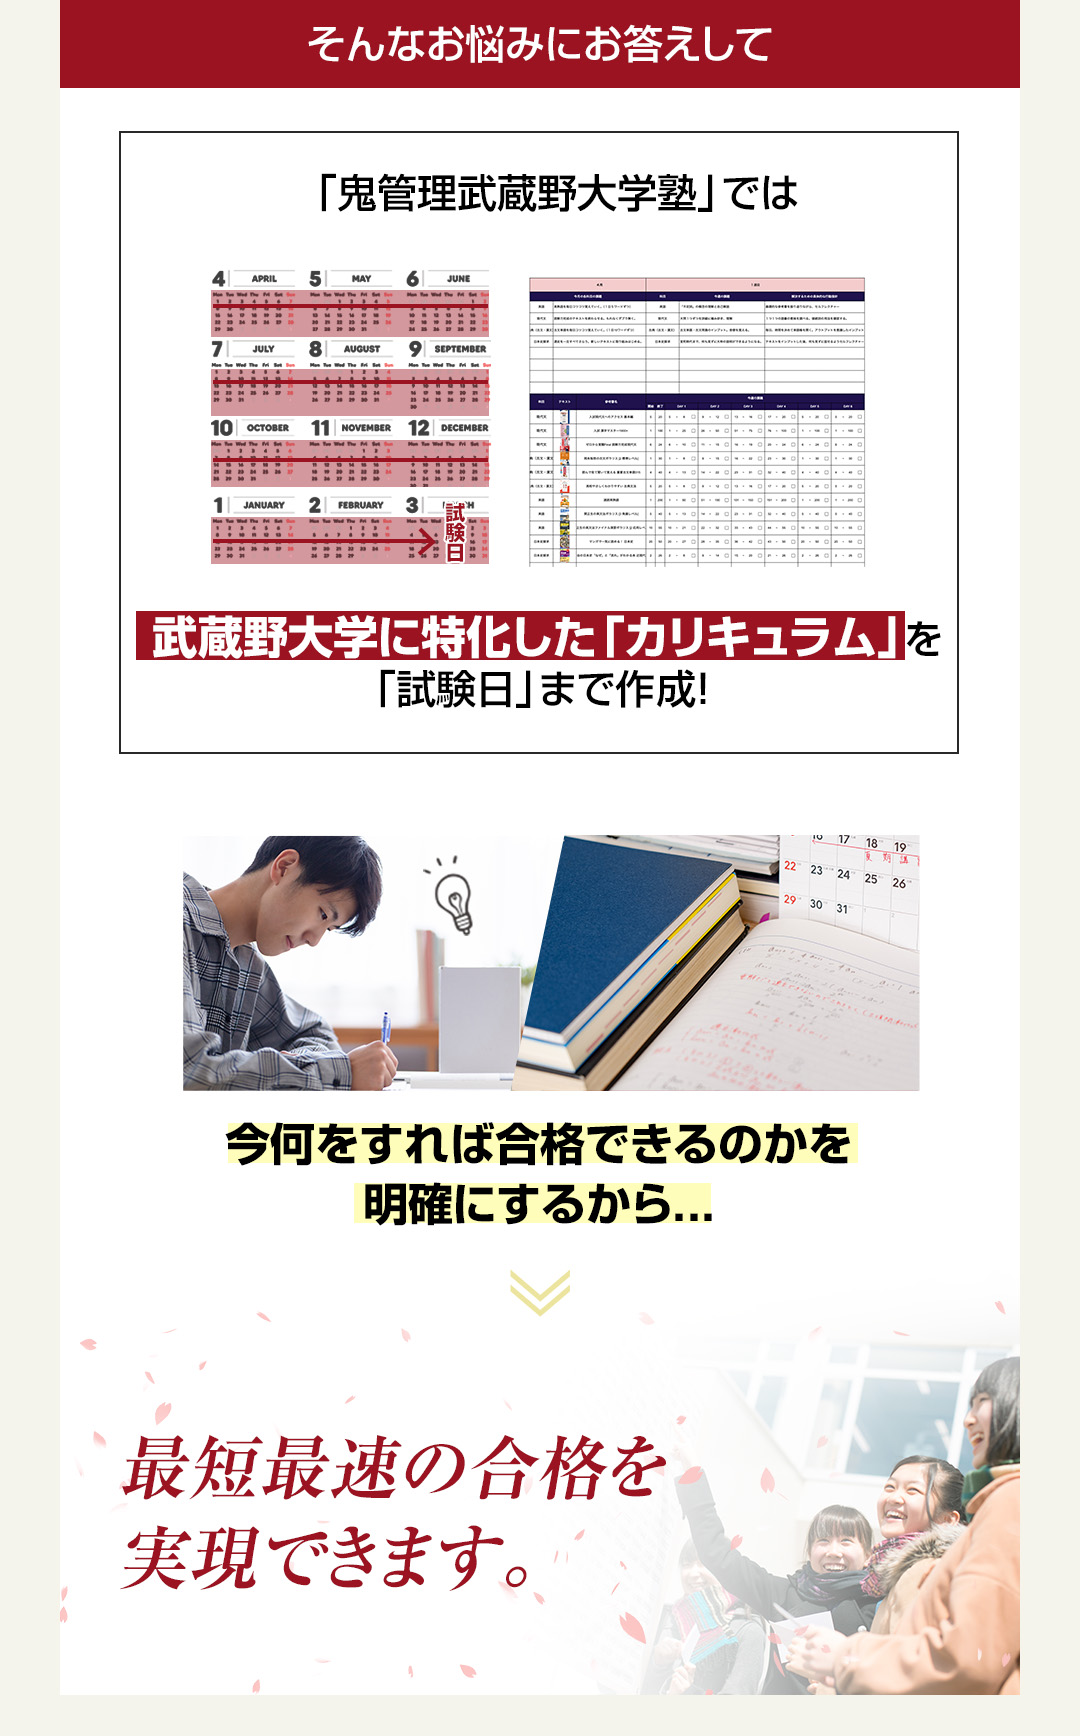 「鬼管理武蔵野大学塾」では武蔵野大学に特化した「カリキュラム」を「試験日」まで作成